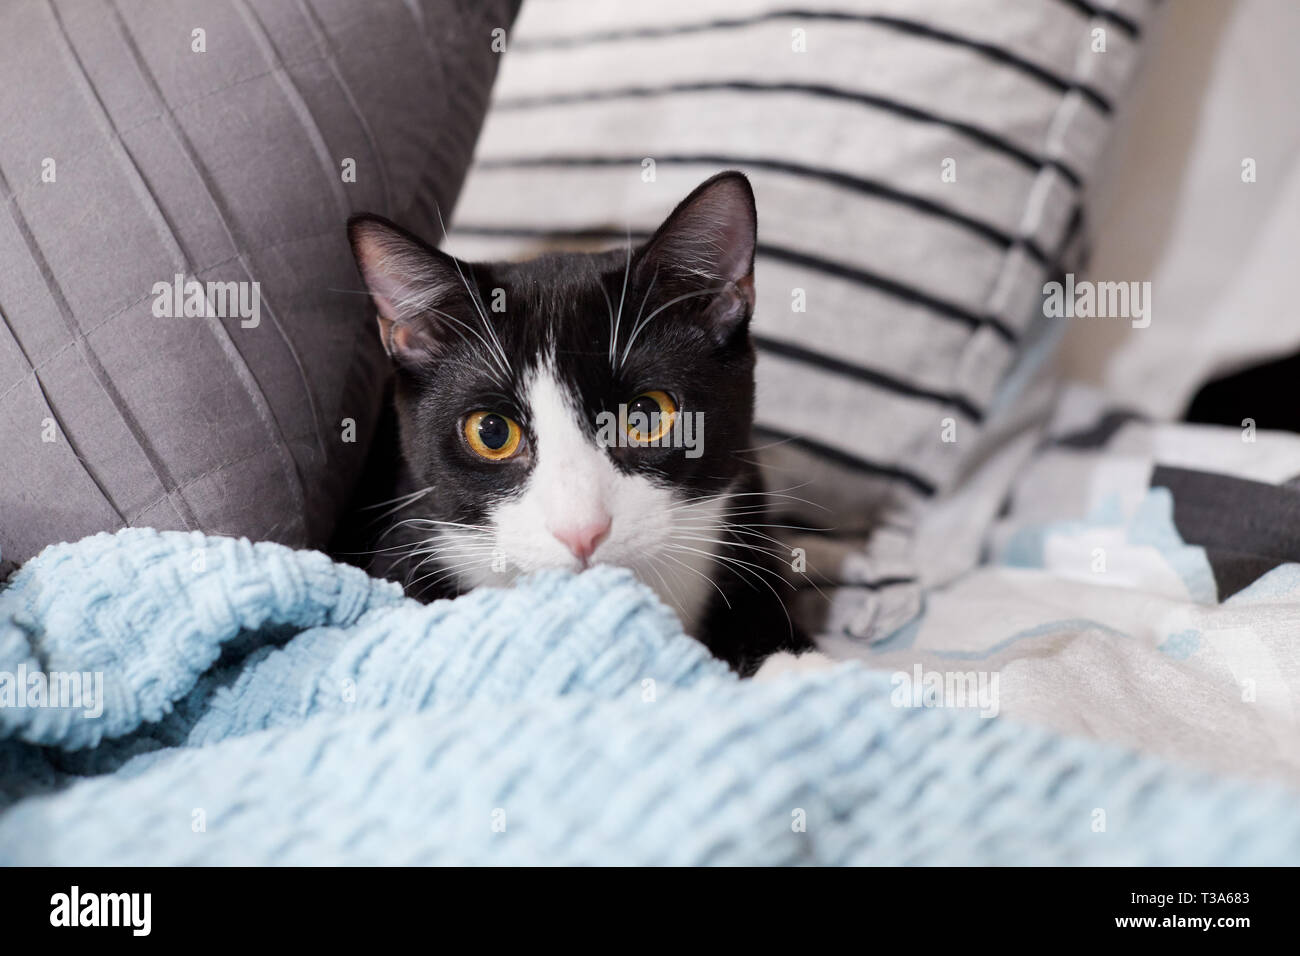 Un blanco y negro tuxedo cat está ocultando en una cama entre almohadas y detrás de una manta azul Foto de stock